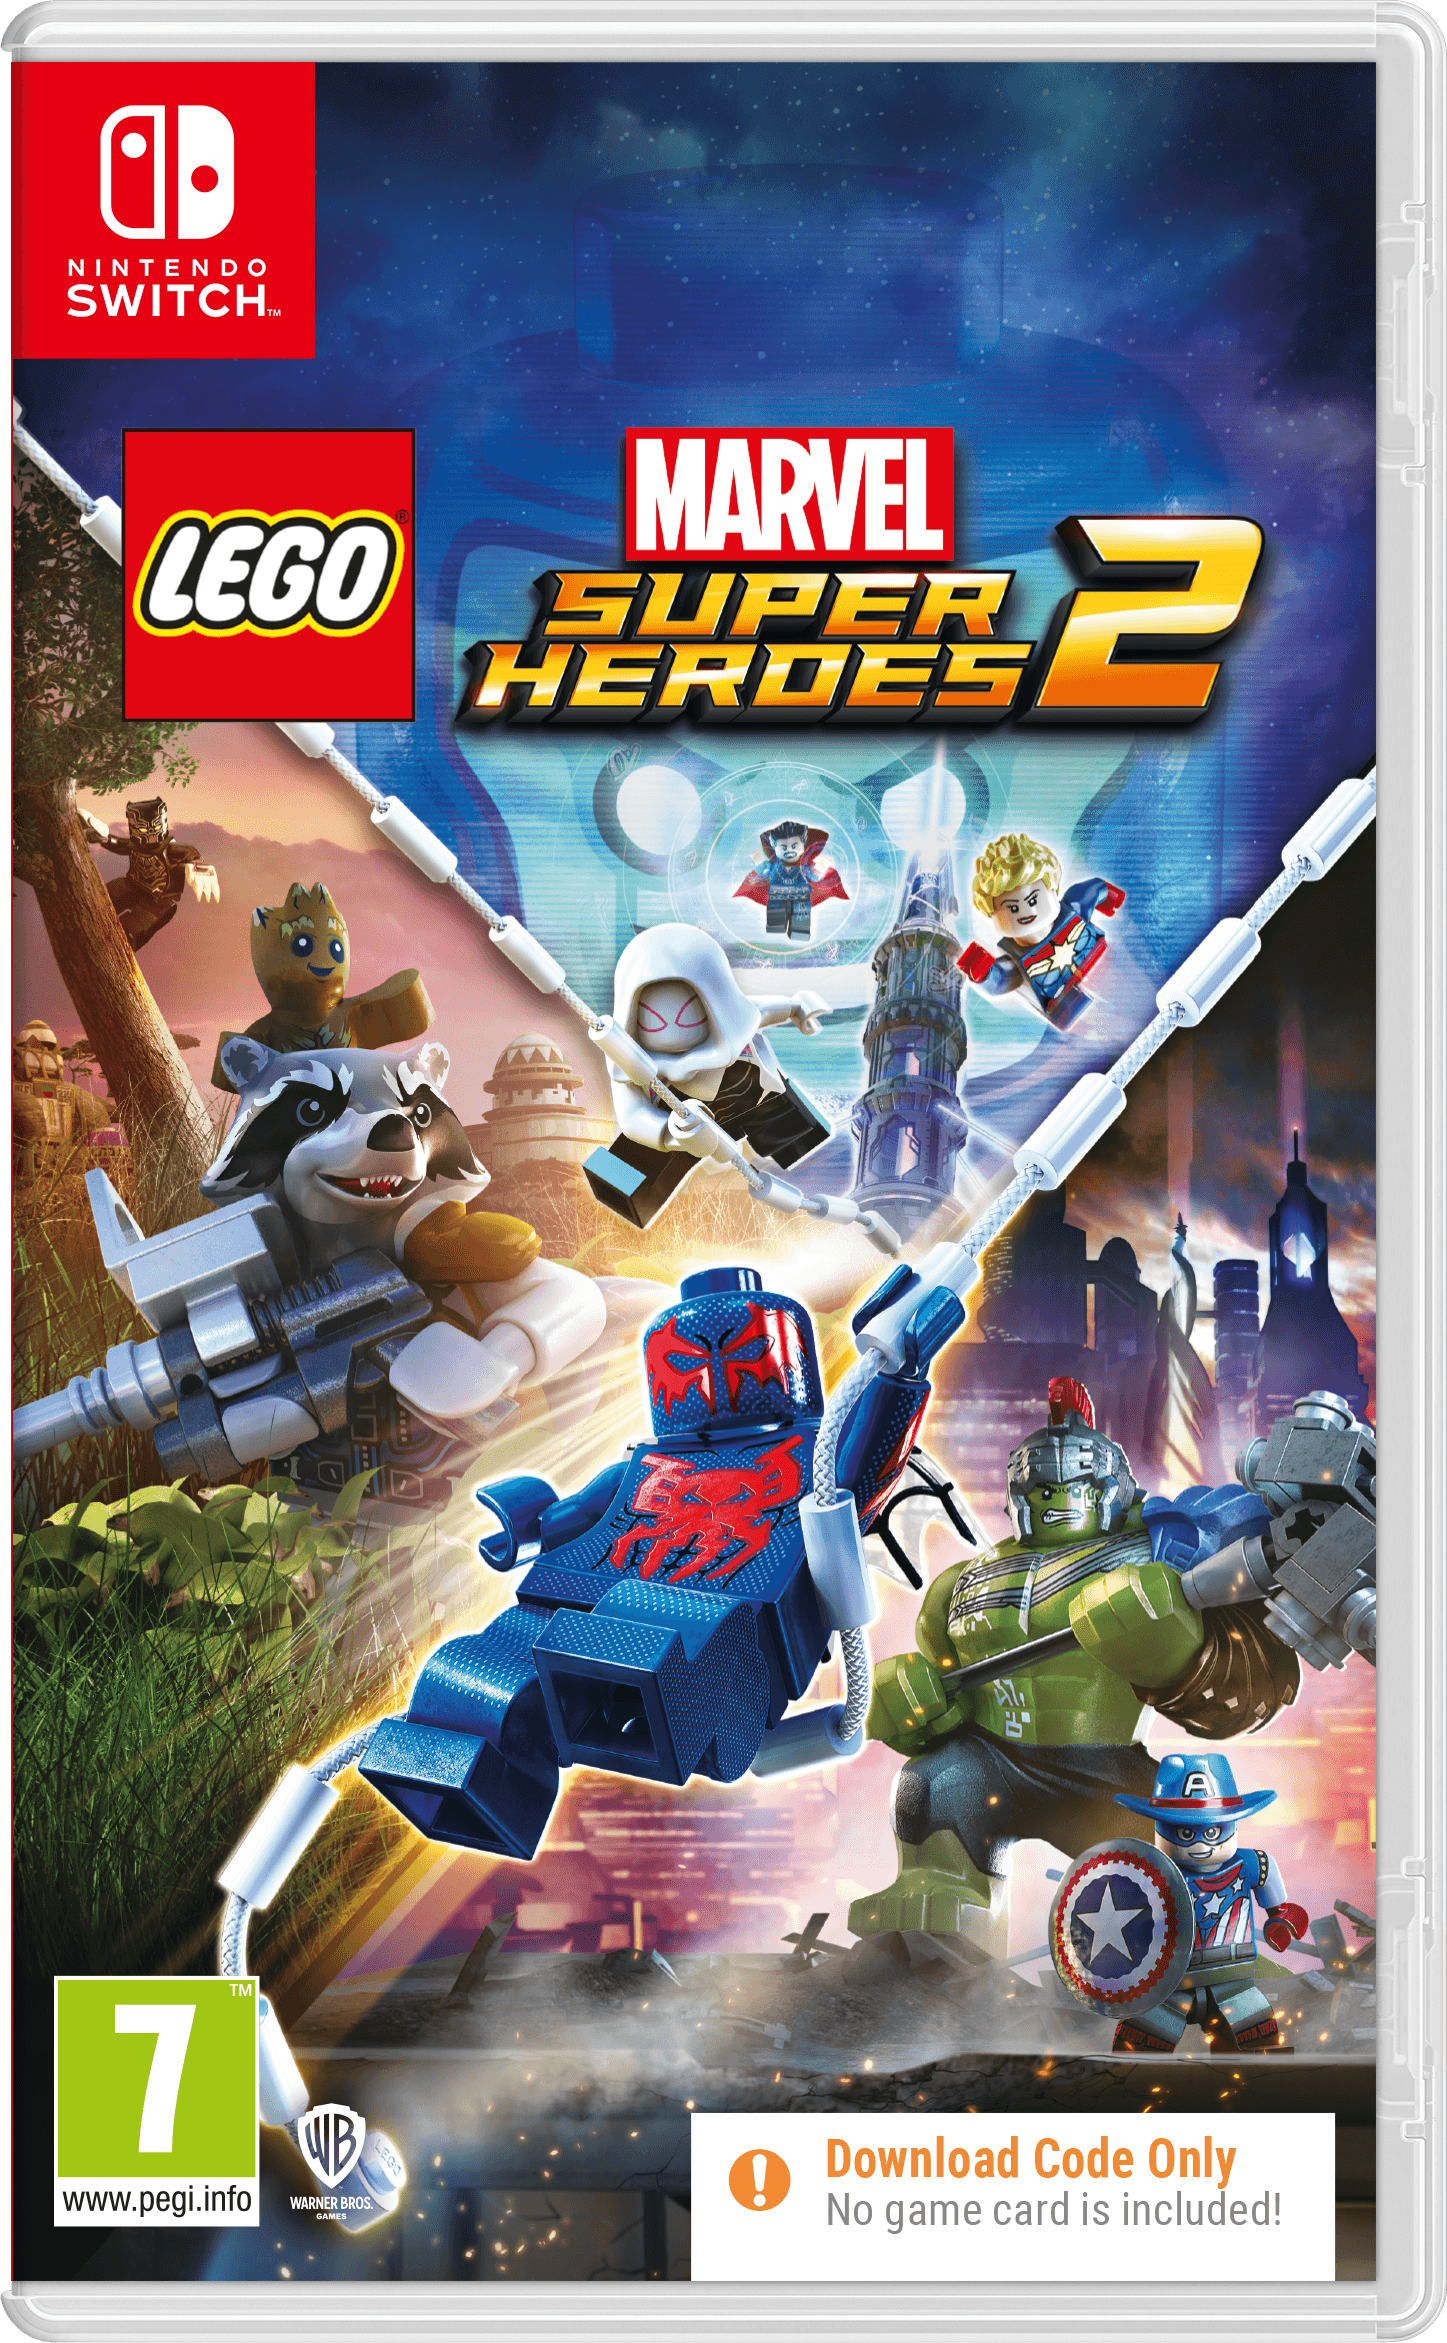 Lego Marvel Super Heroes 2 Cib - Want a New Gadget